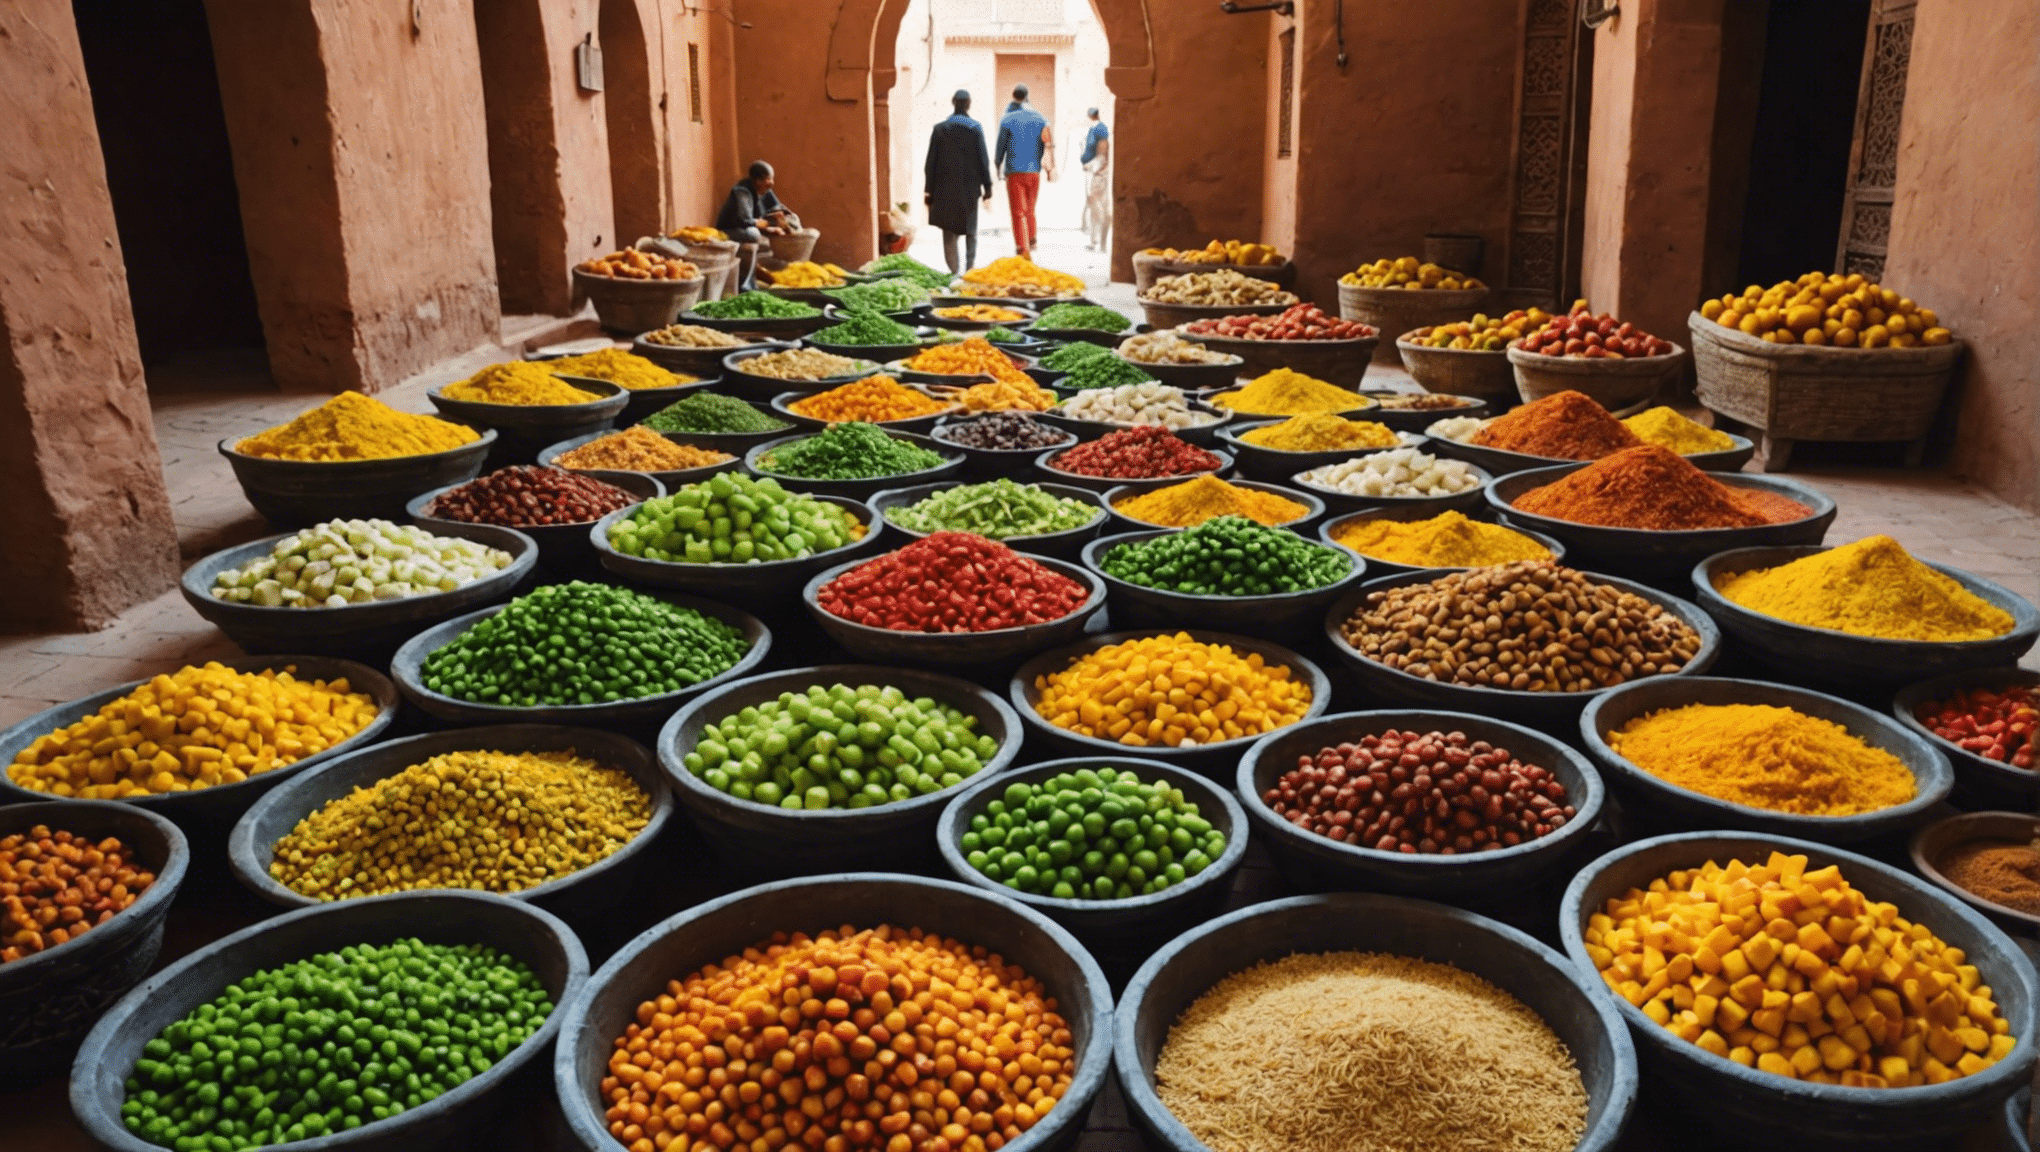 Descubra la disponibilidad de comida vegetariana en Marrakech y descubra dónde disfrutar de deliciosas comidas sin carne durante su visita a esta vibrante ciudad.